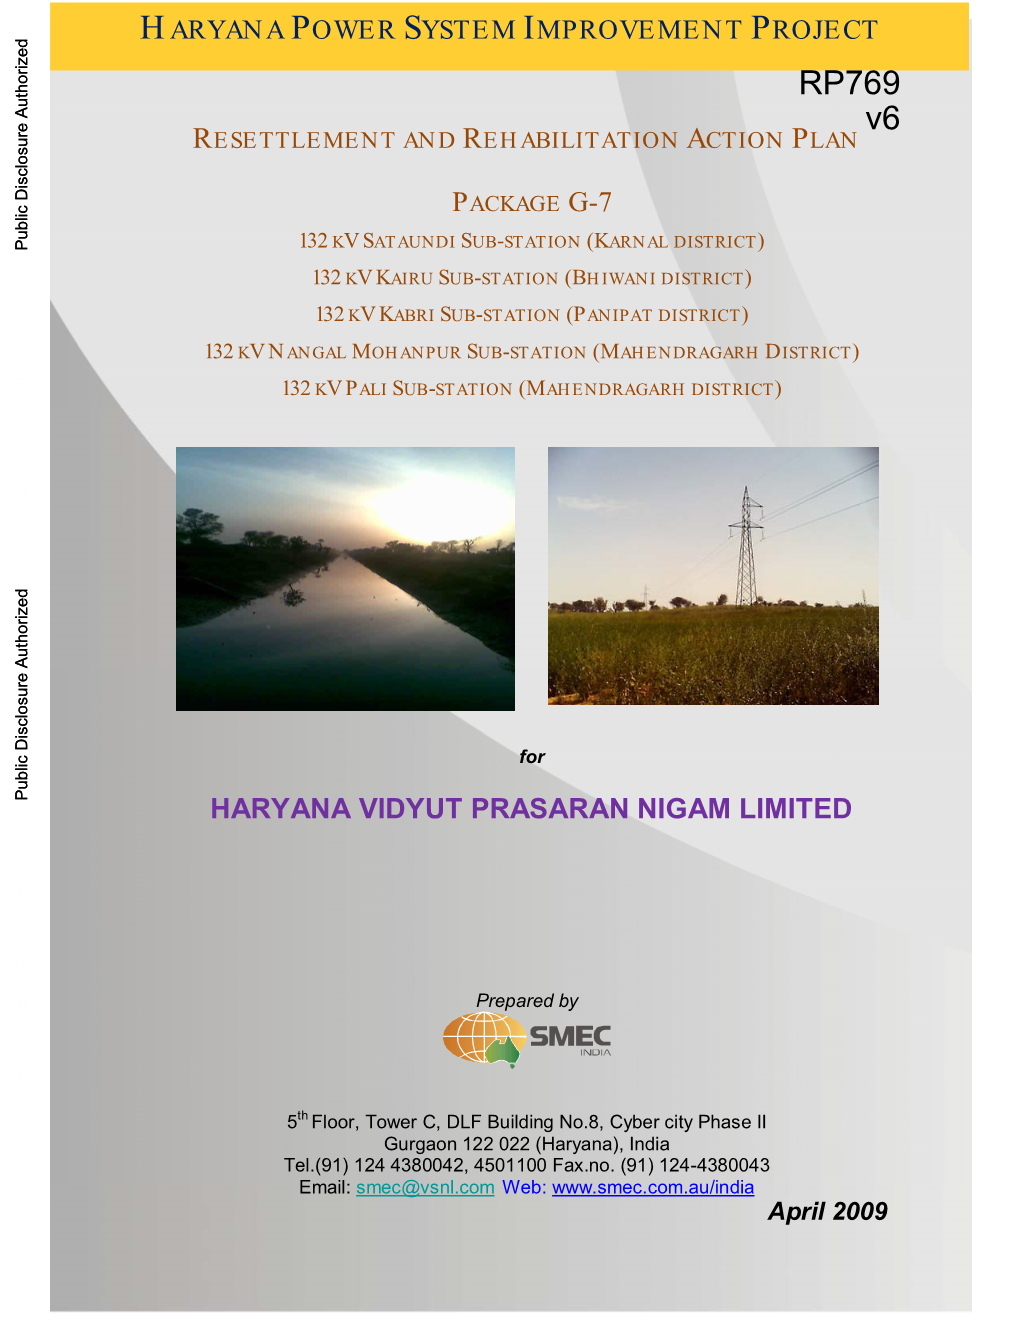 Haryana Vidyut Prasaran Nigam Limited